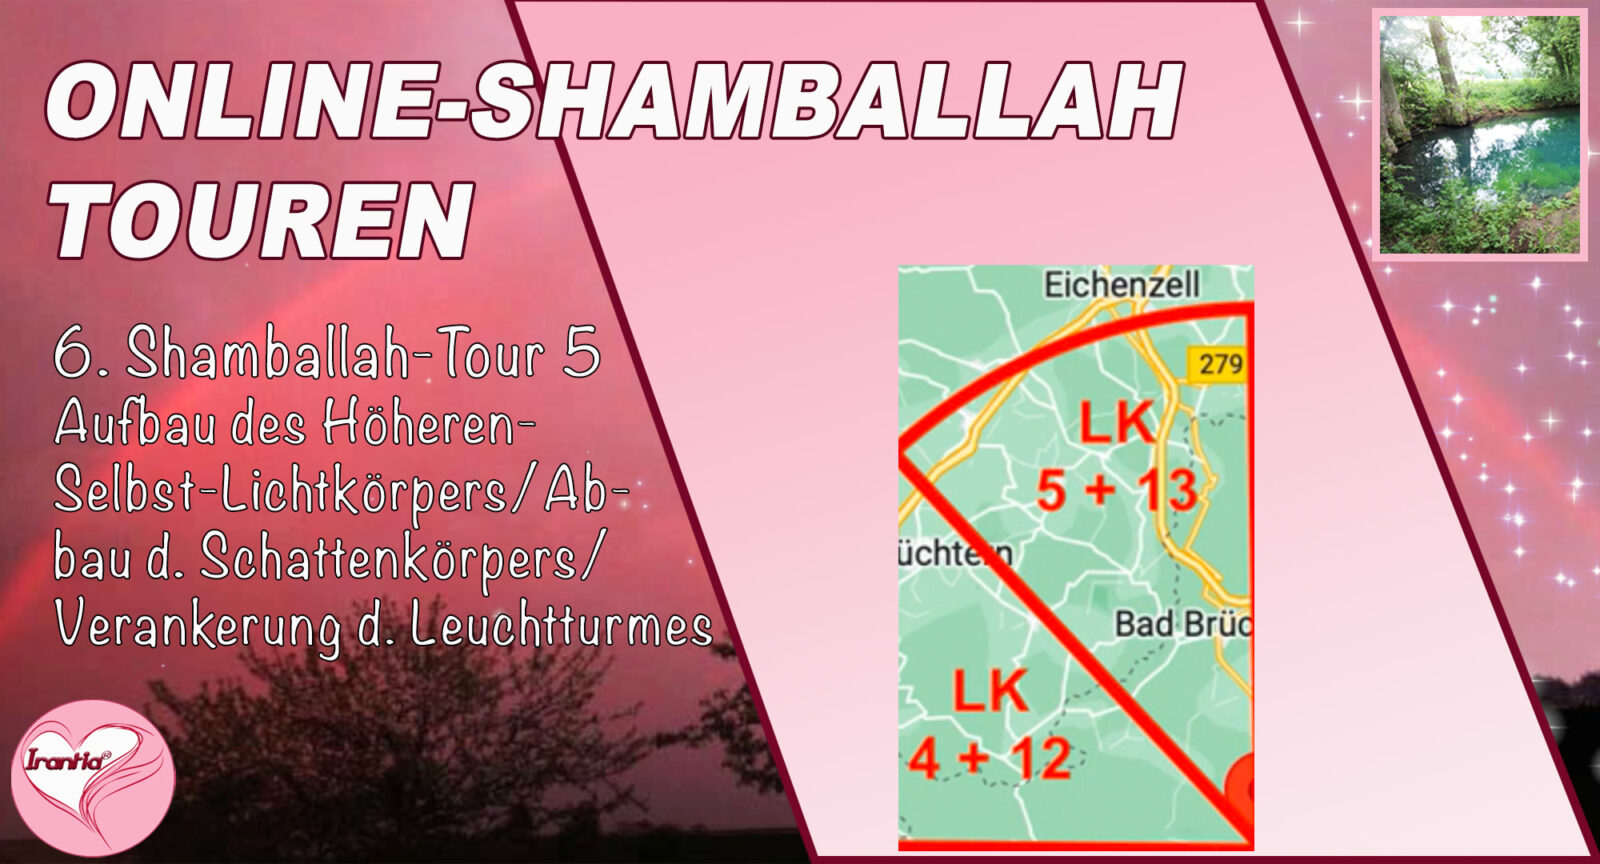 Online-Shamballah-Wege, Teil 6, Shamballah-Tour 5, Aufbau Höheres-Selbst-Lichtkörper/Abbau Schattenkörper/Verankerung des Leuchtturmes